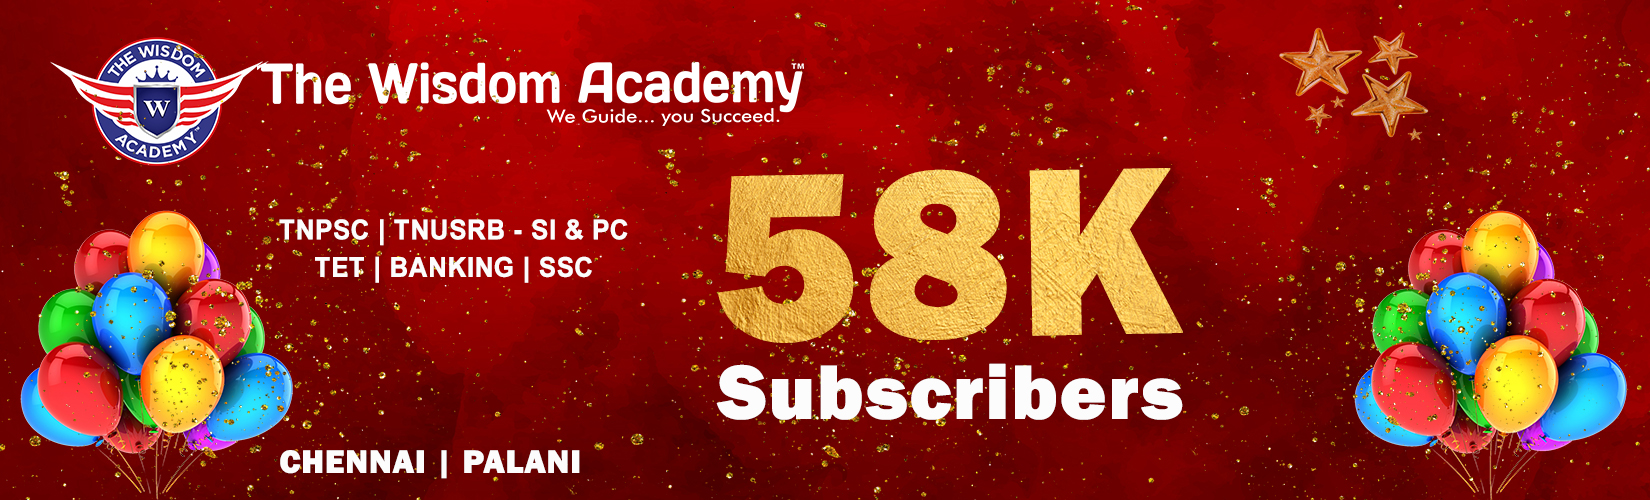 Youtube 50k Wisdom Academy web